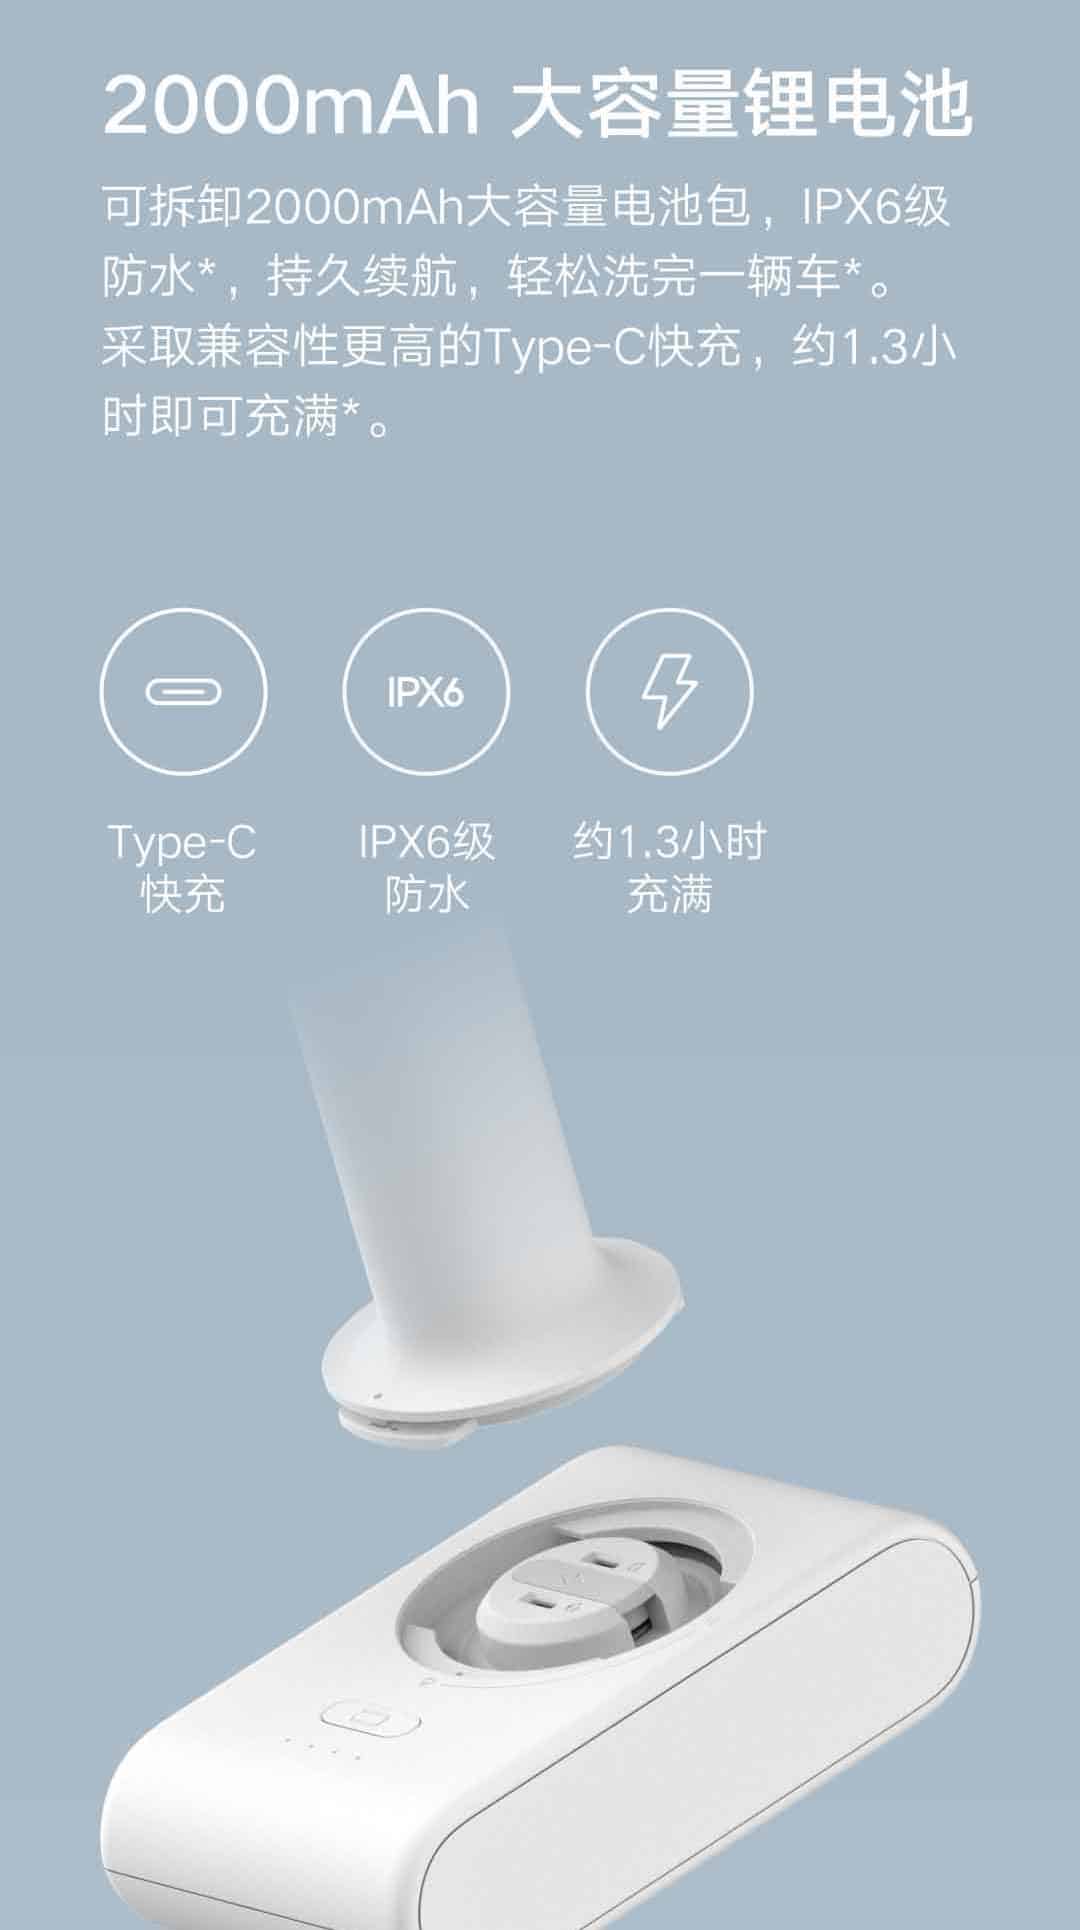 Xiaomi car washing machine